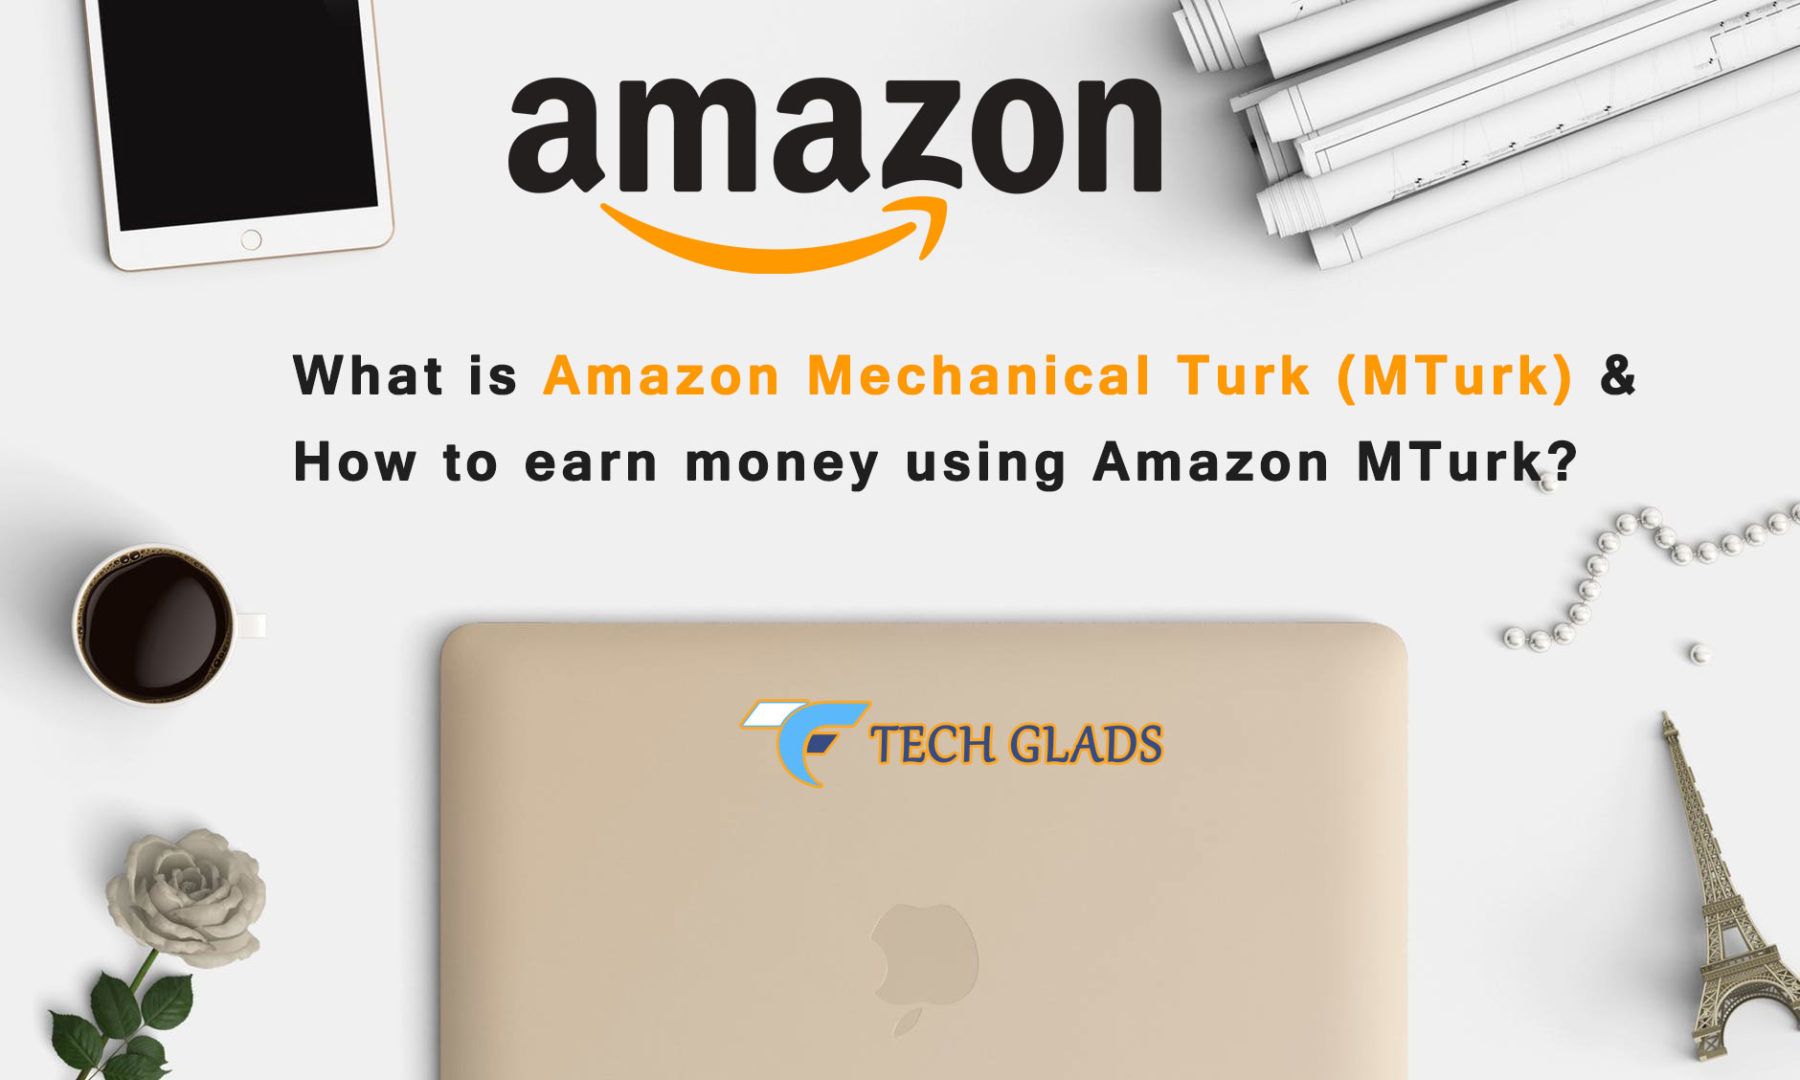 How To Earn Money Amazon Mechanical Turk